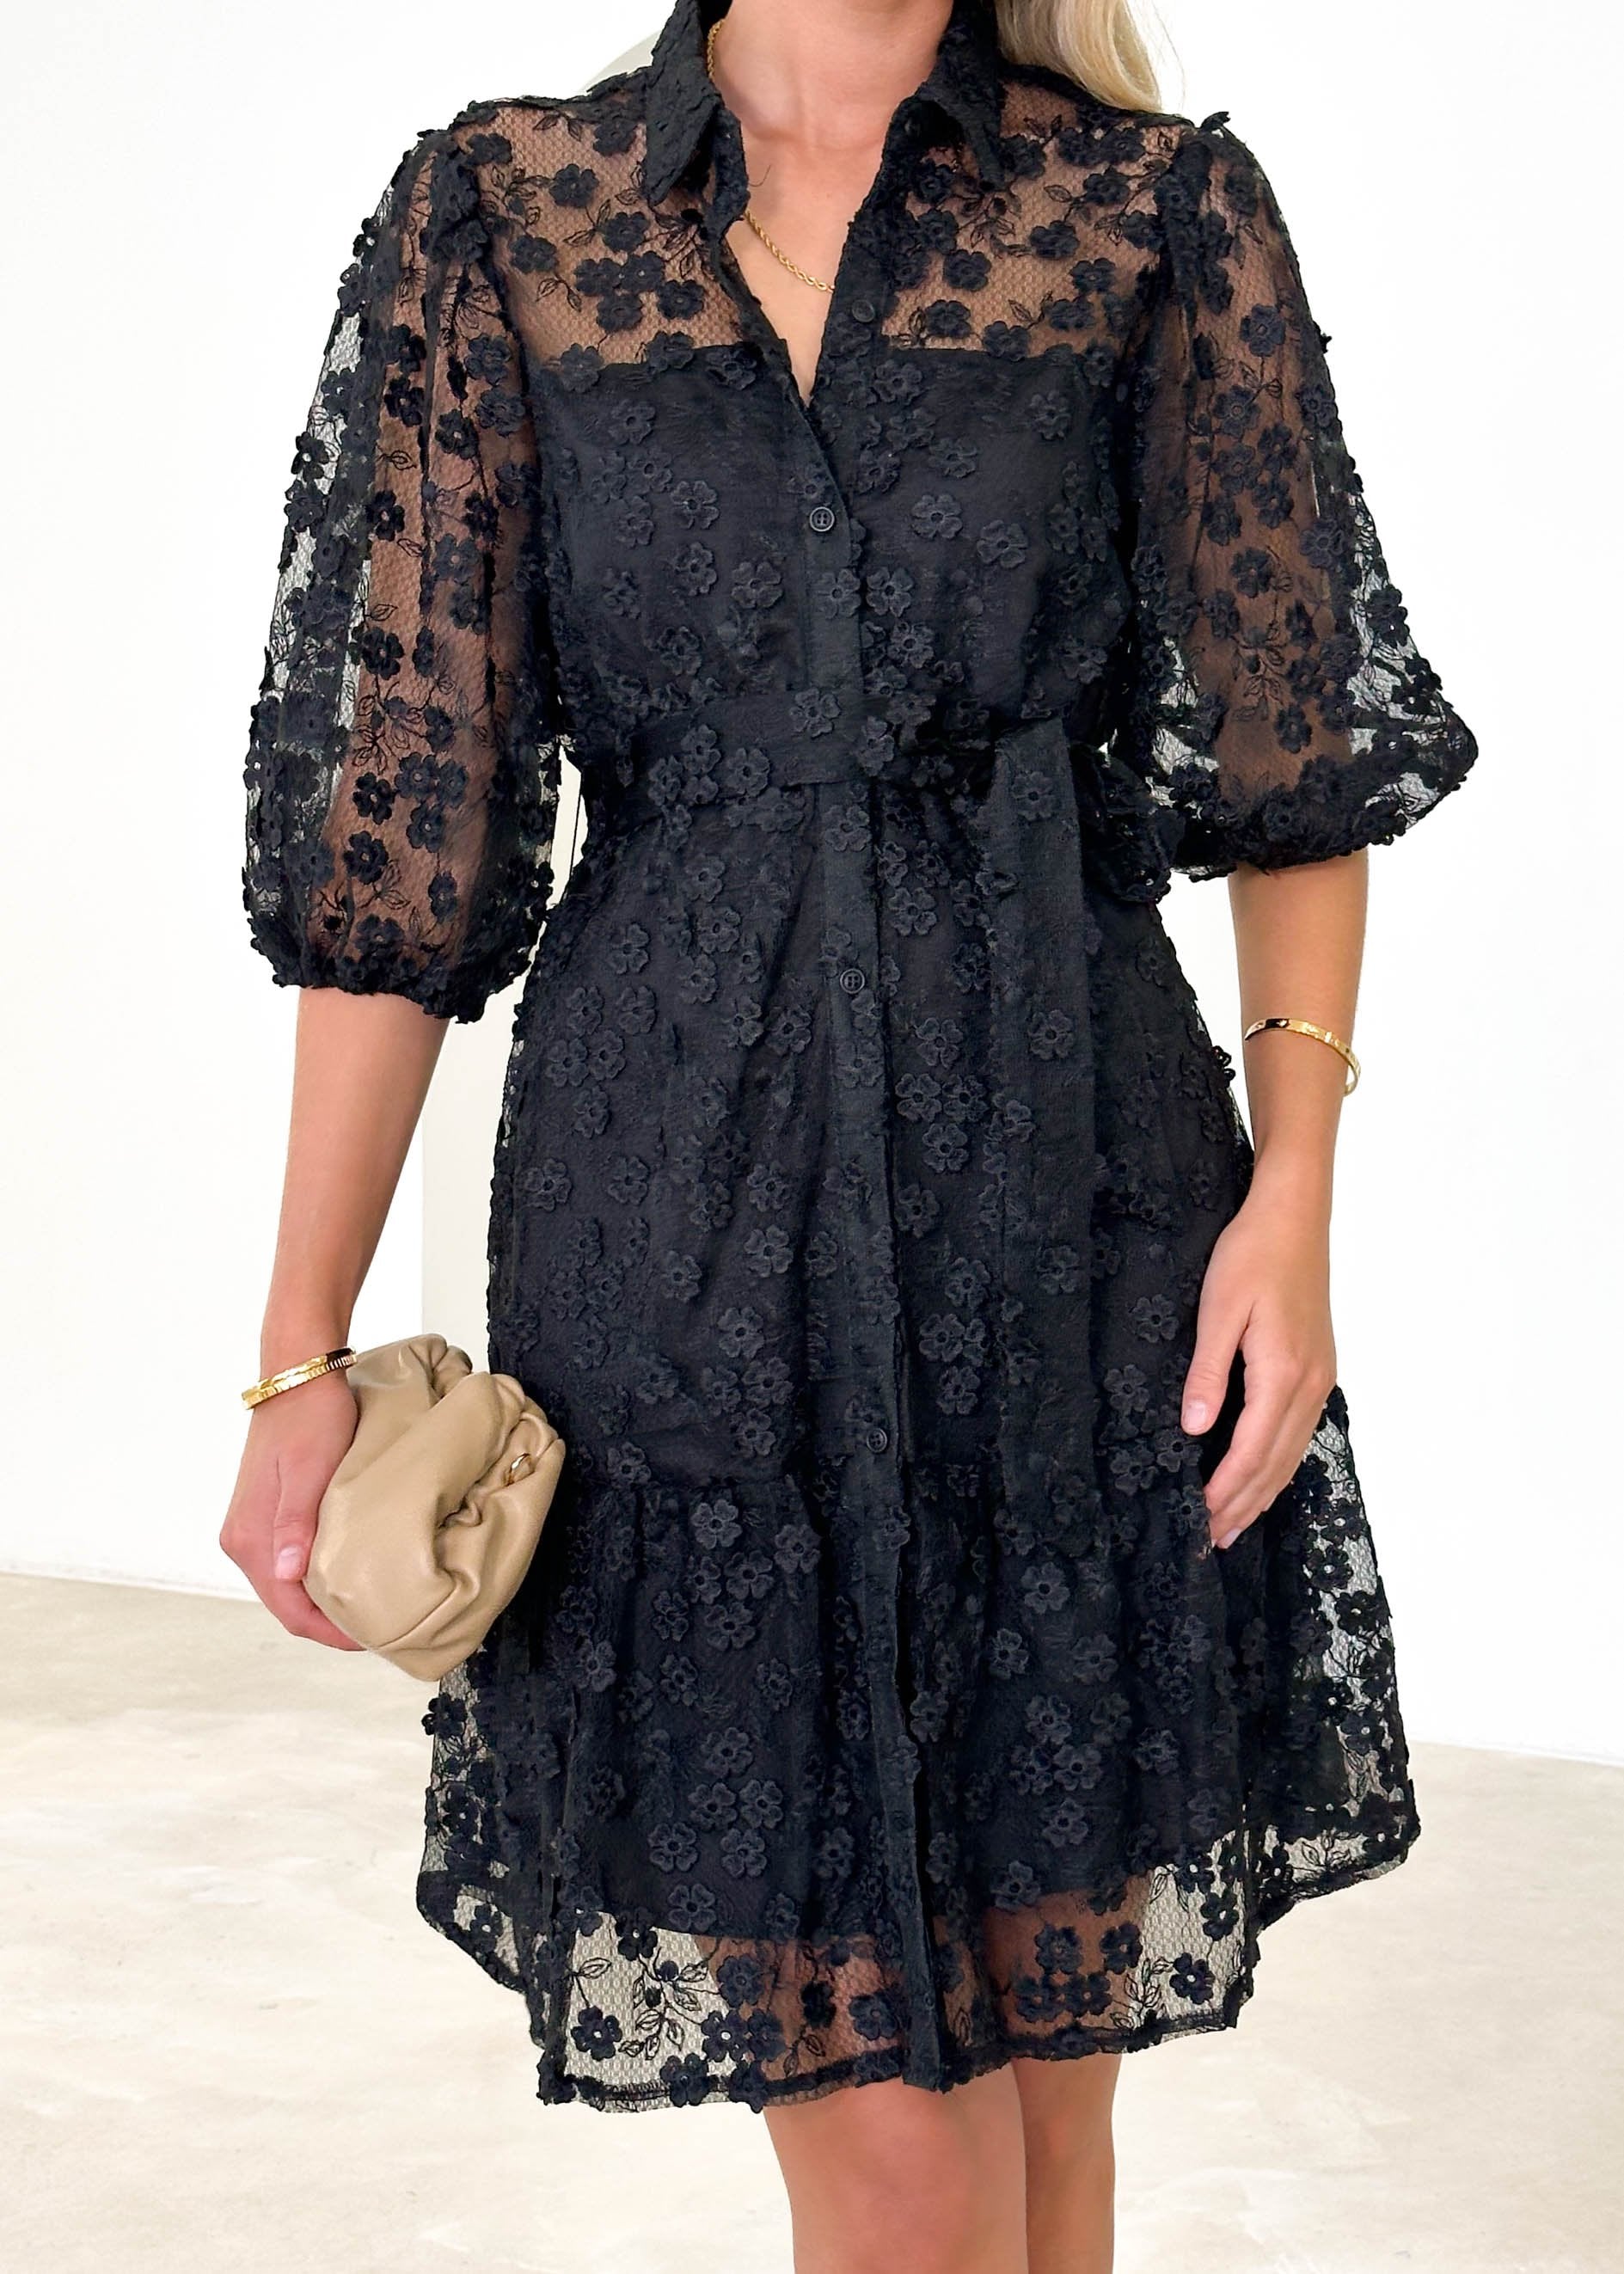 Riteski Embroidered Dress - Black